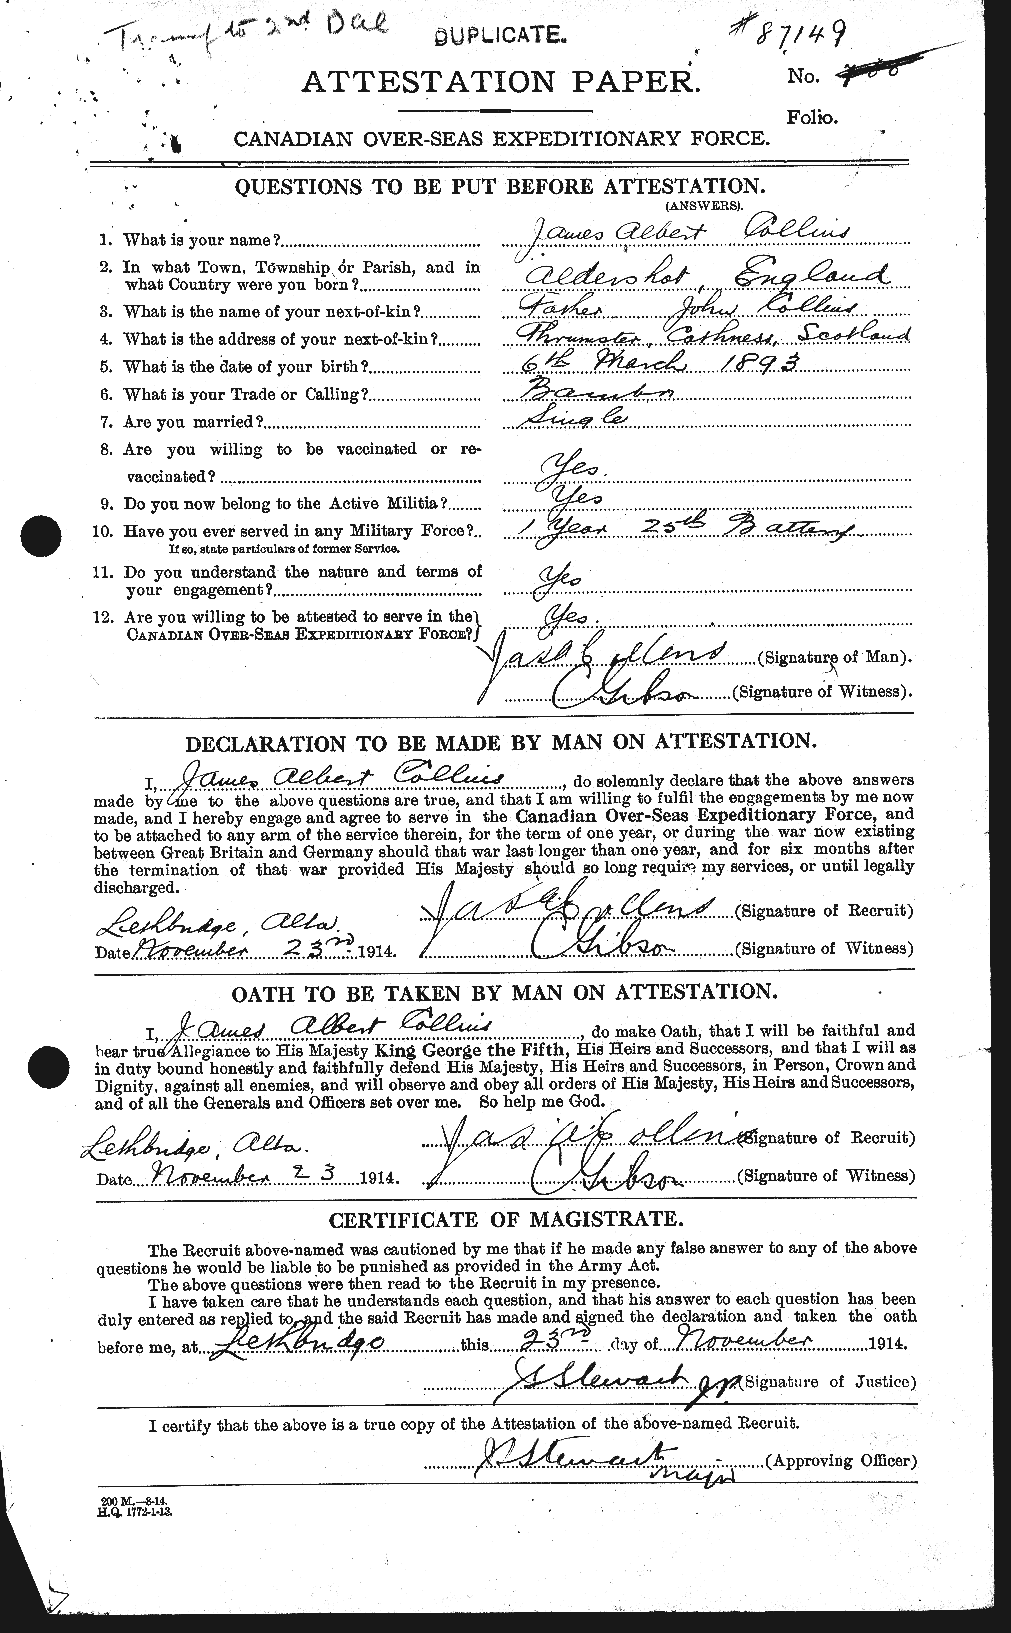 Dossiers du Personnel de la Première Guerre mondiale - CEC 069959a